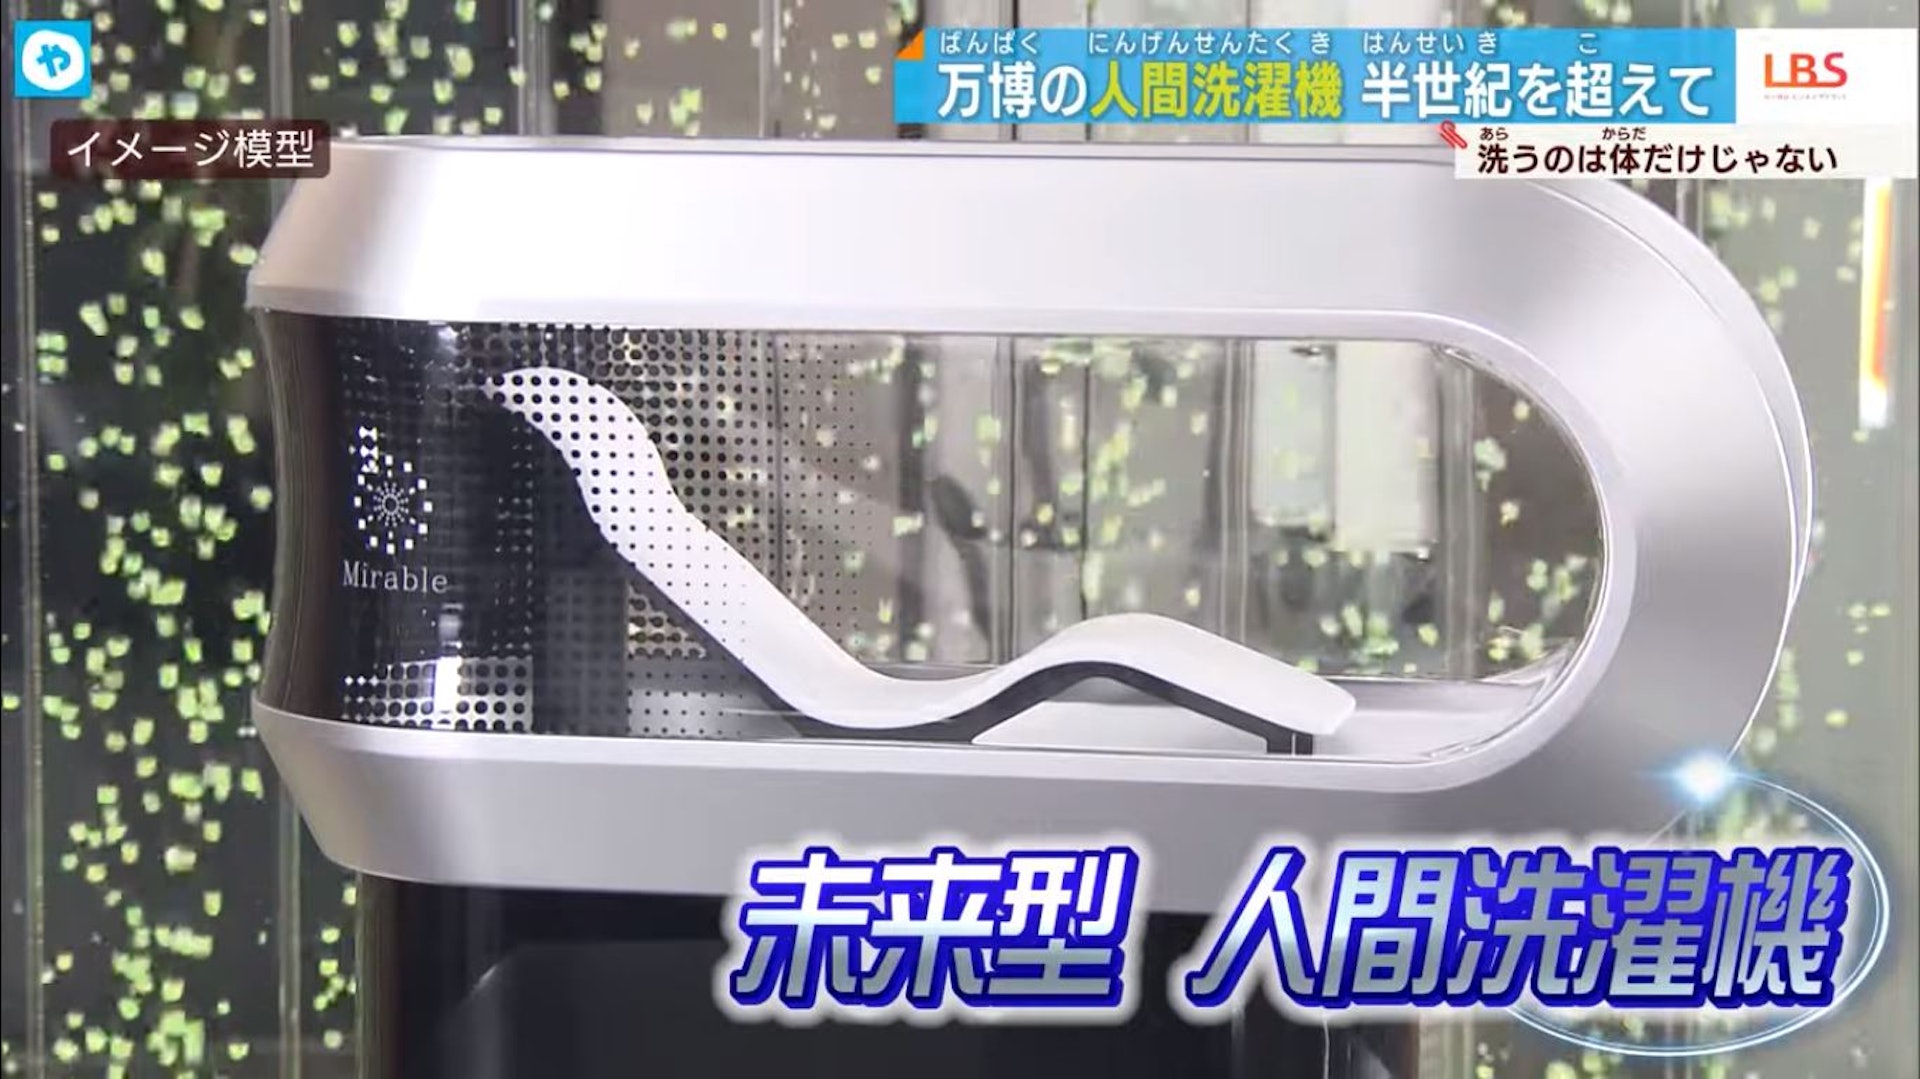 只要躺到機器內就可以將身體洗淨。（Youtube@テレビ大阪ニュース影片擷圖）